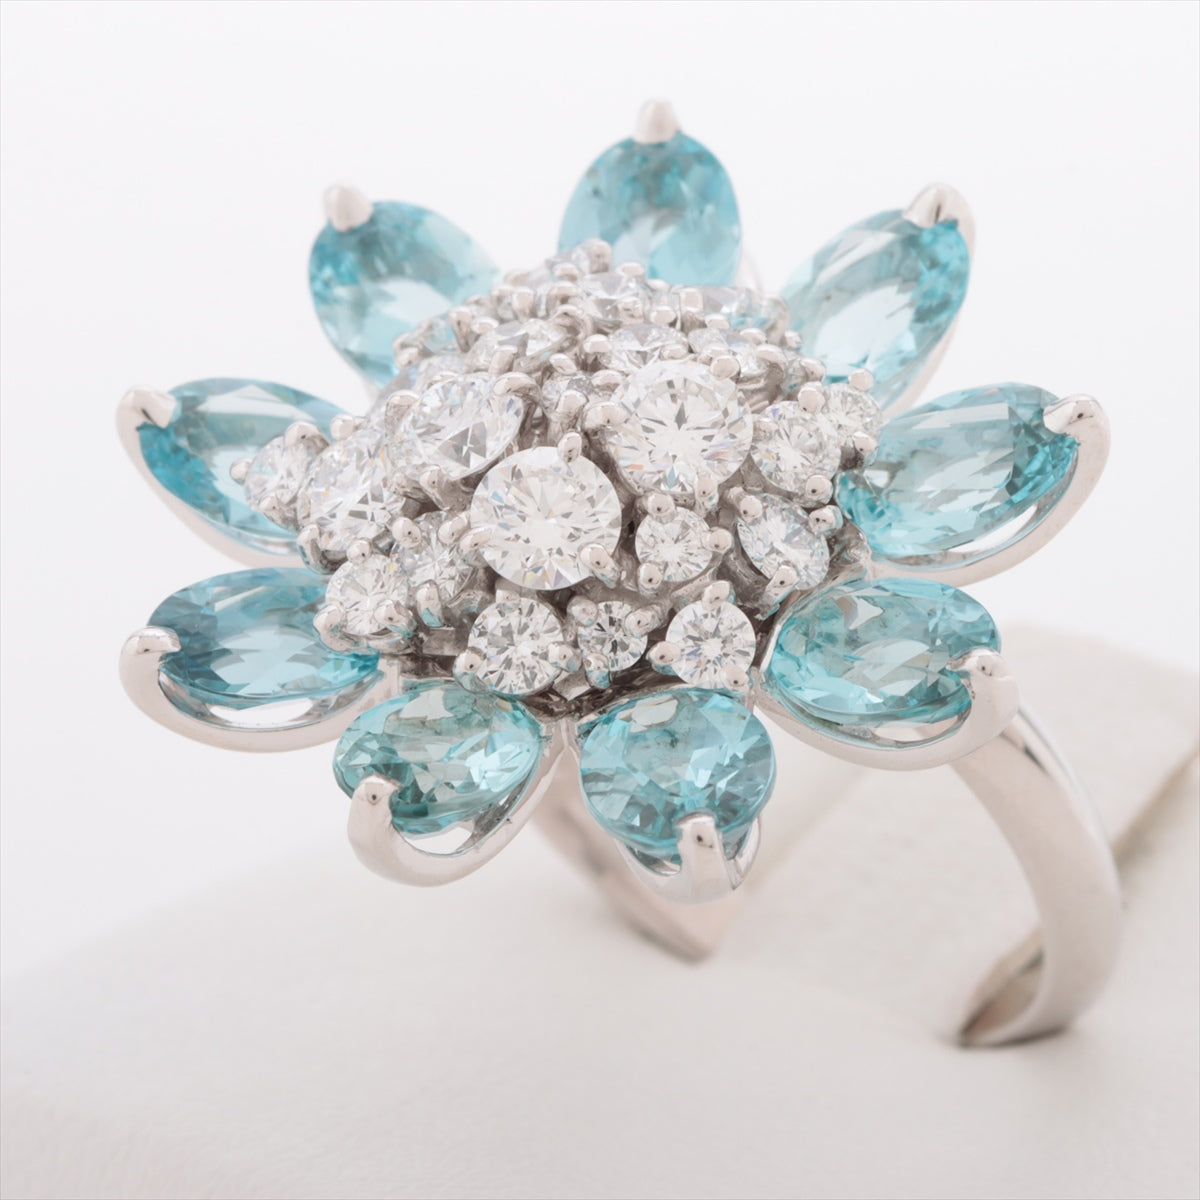 Van Cleef & Arpels Hawaiian Aquamarine Diamond Ring 750(WG) 15.1g 52